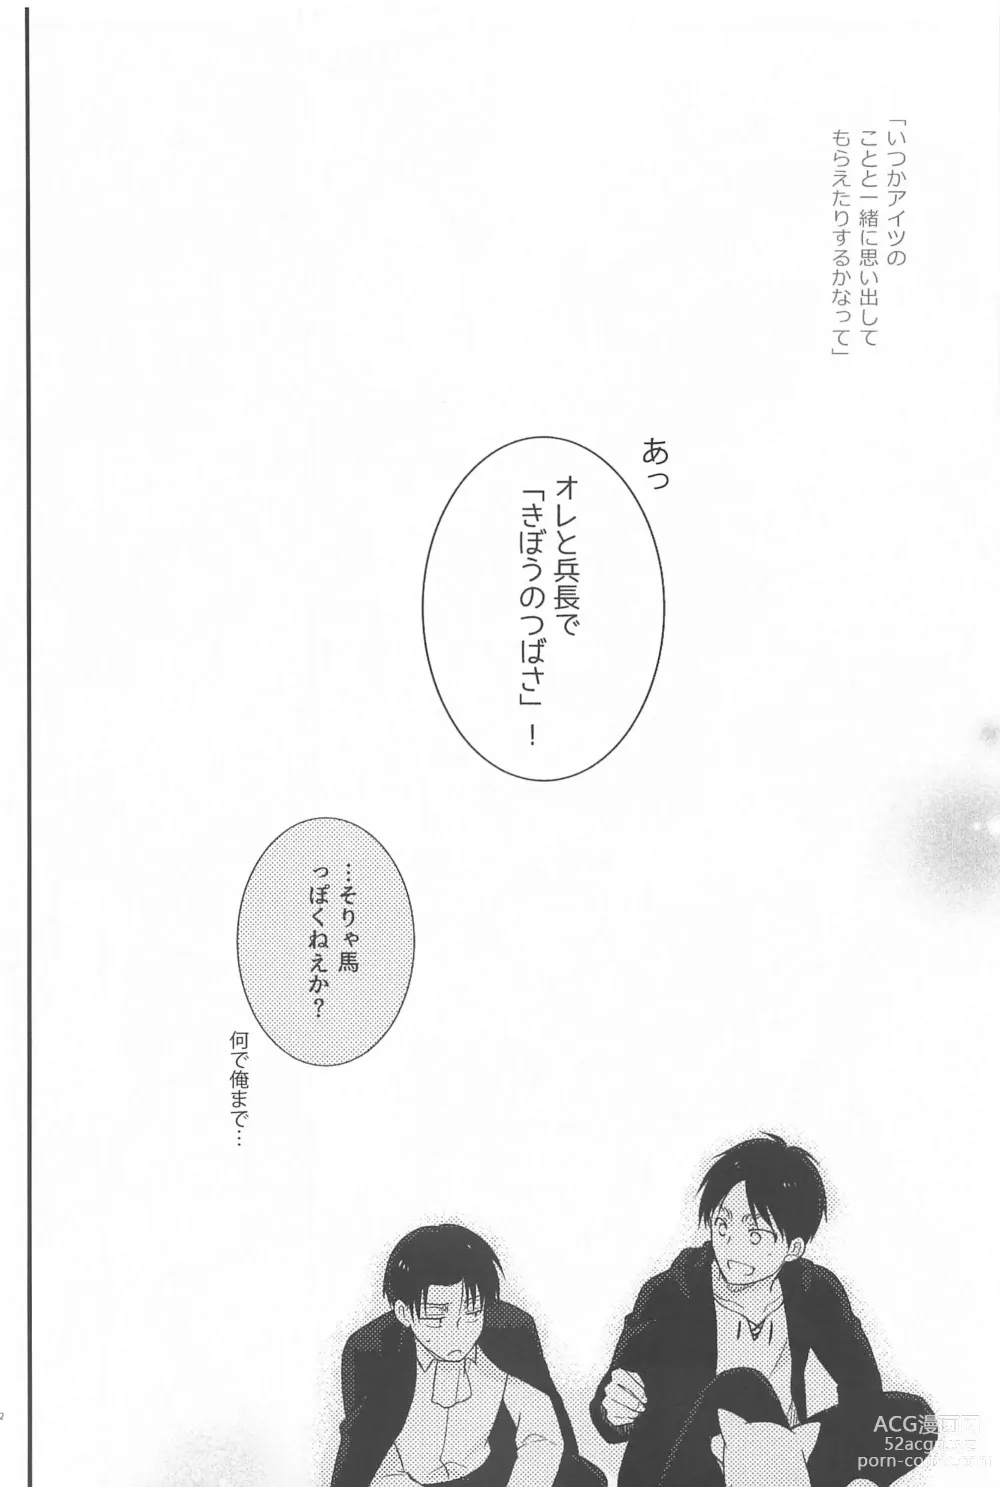 Page 11 of doujinshi Short x Assort